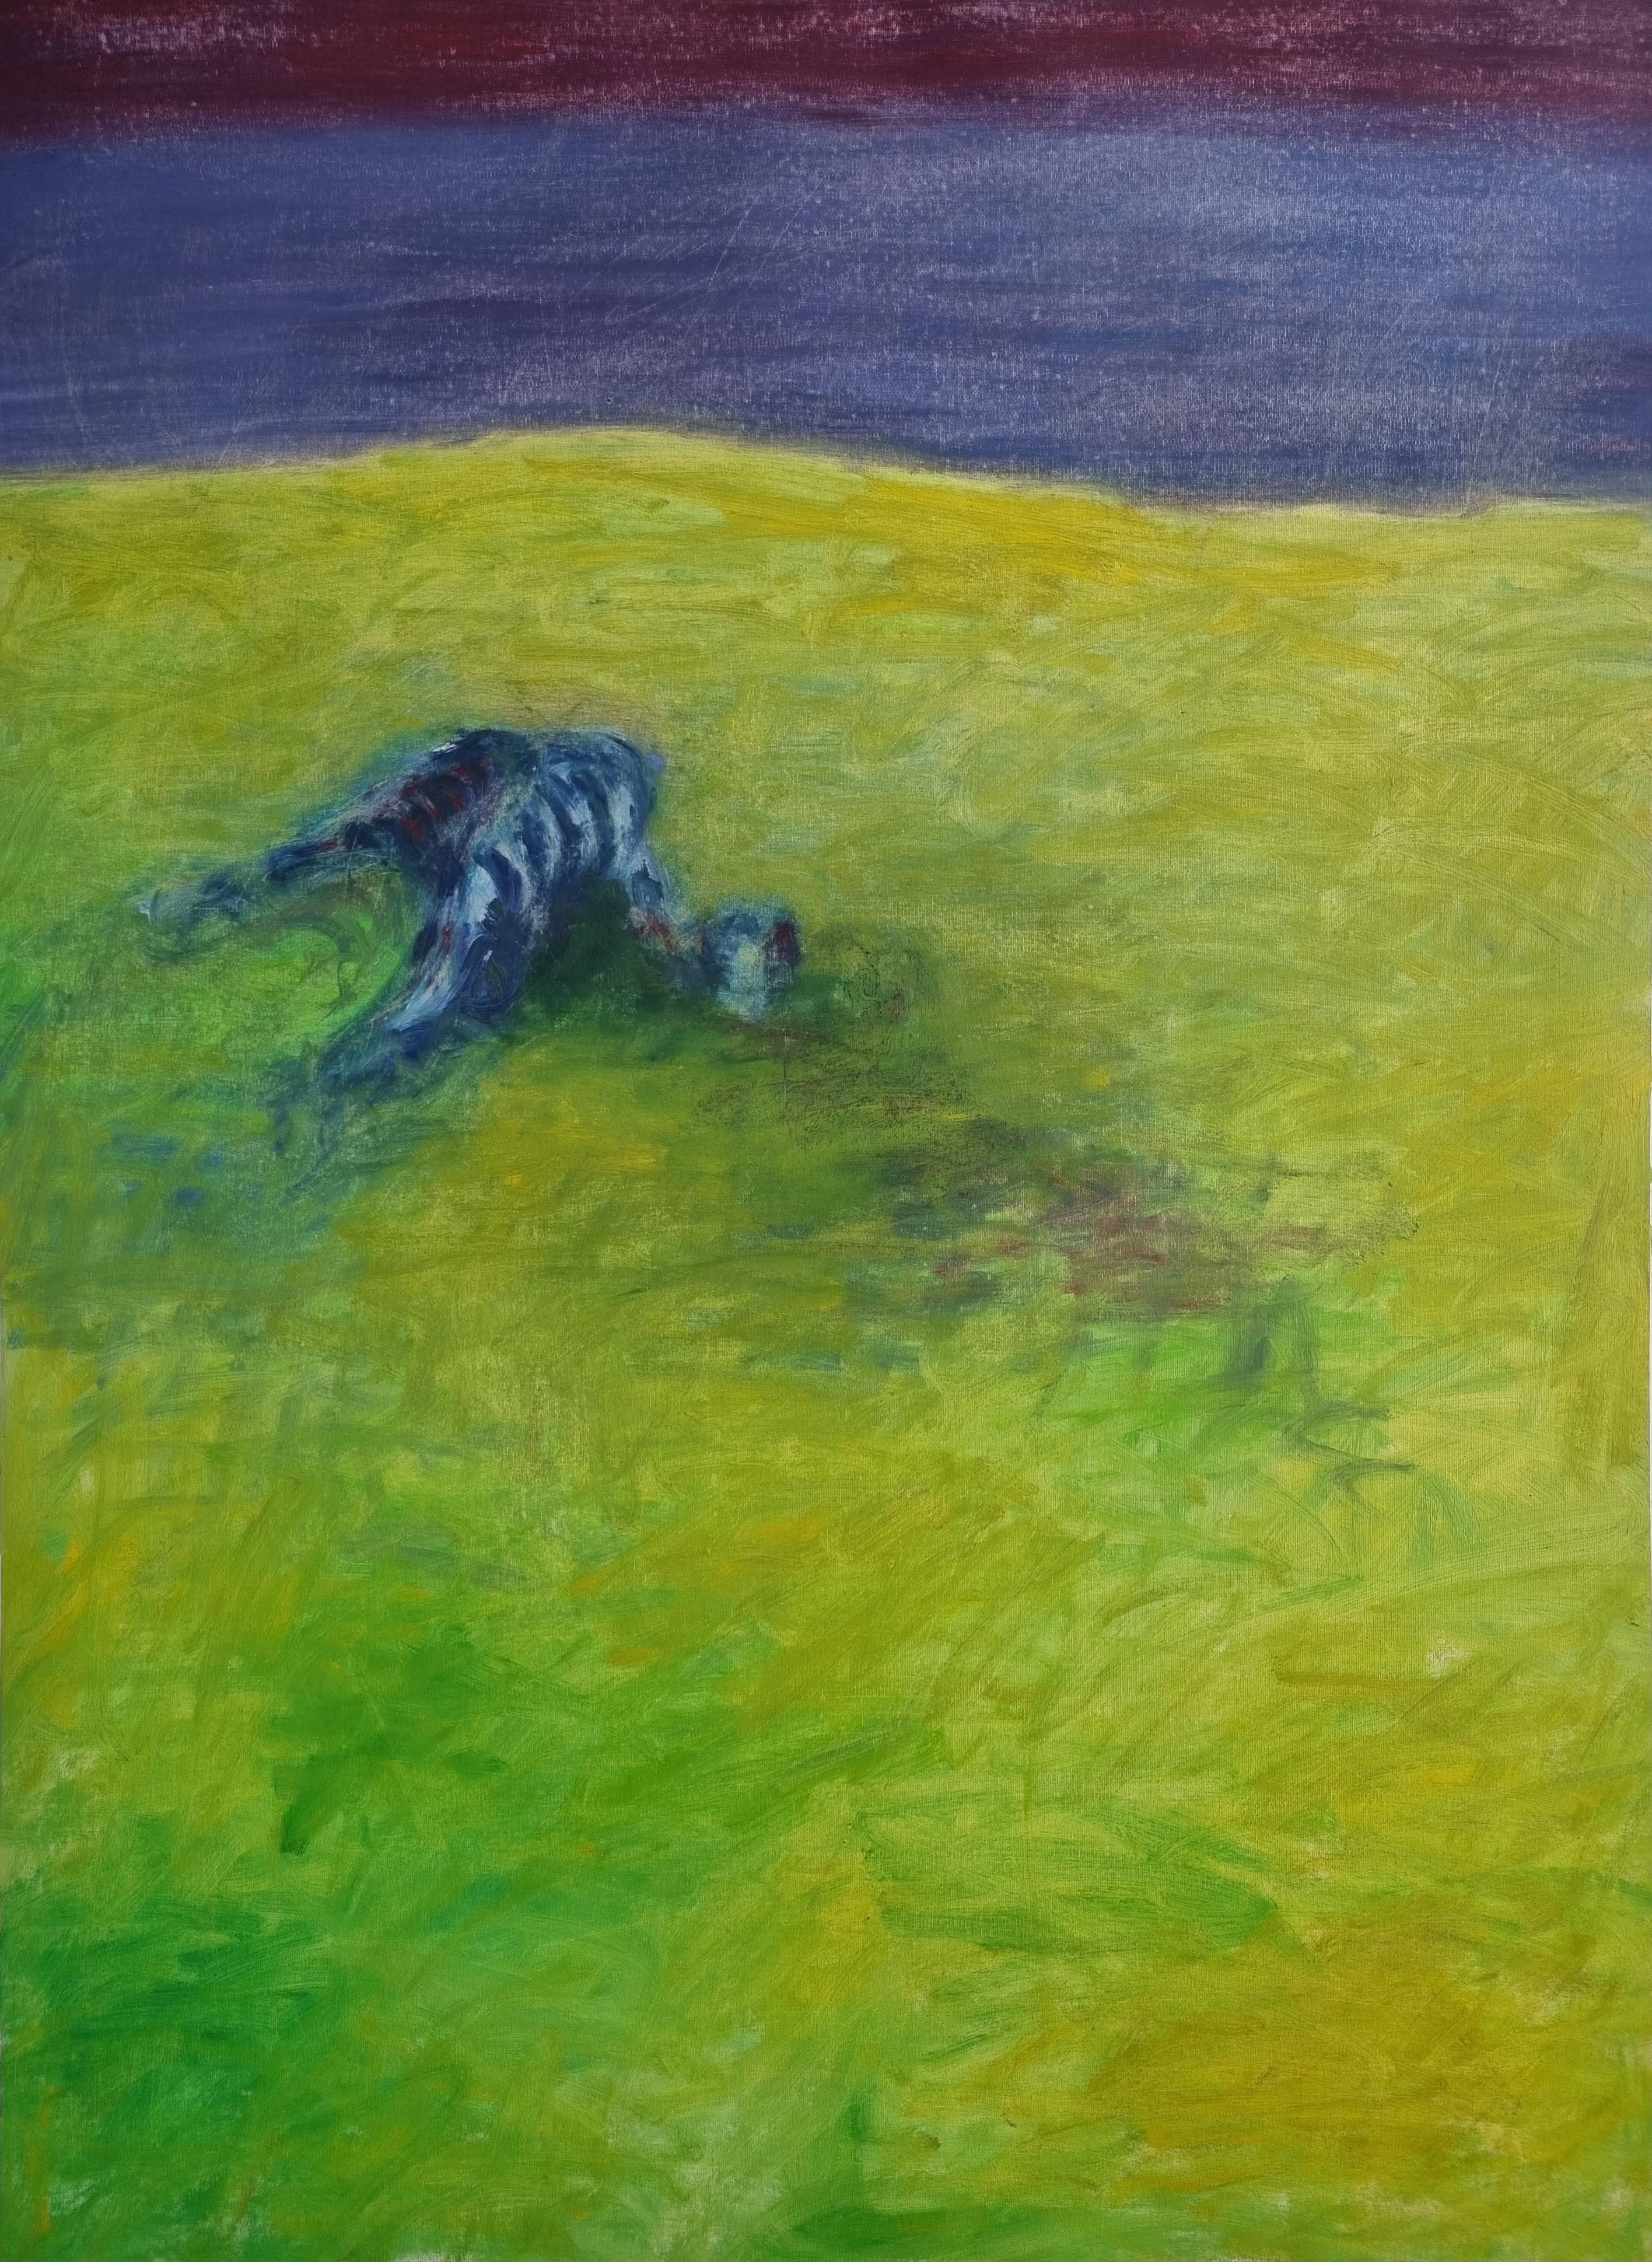 Body in the Field 1 - 21. Jahrhundert, Landschaft, Grün, Blau, Gemälde